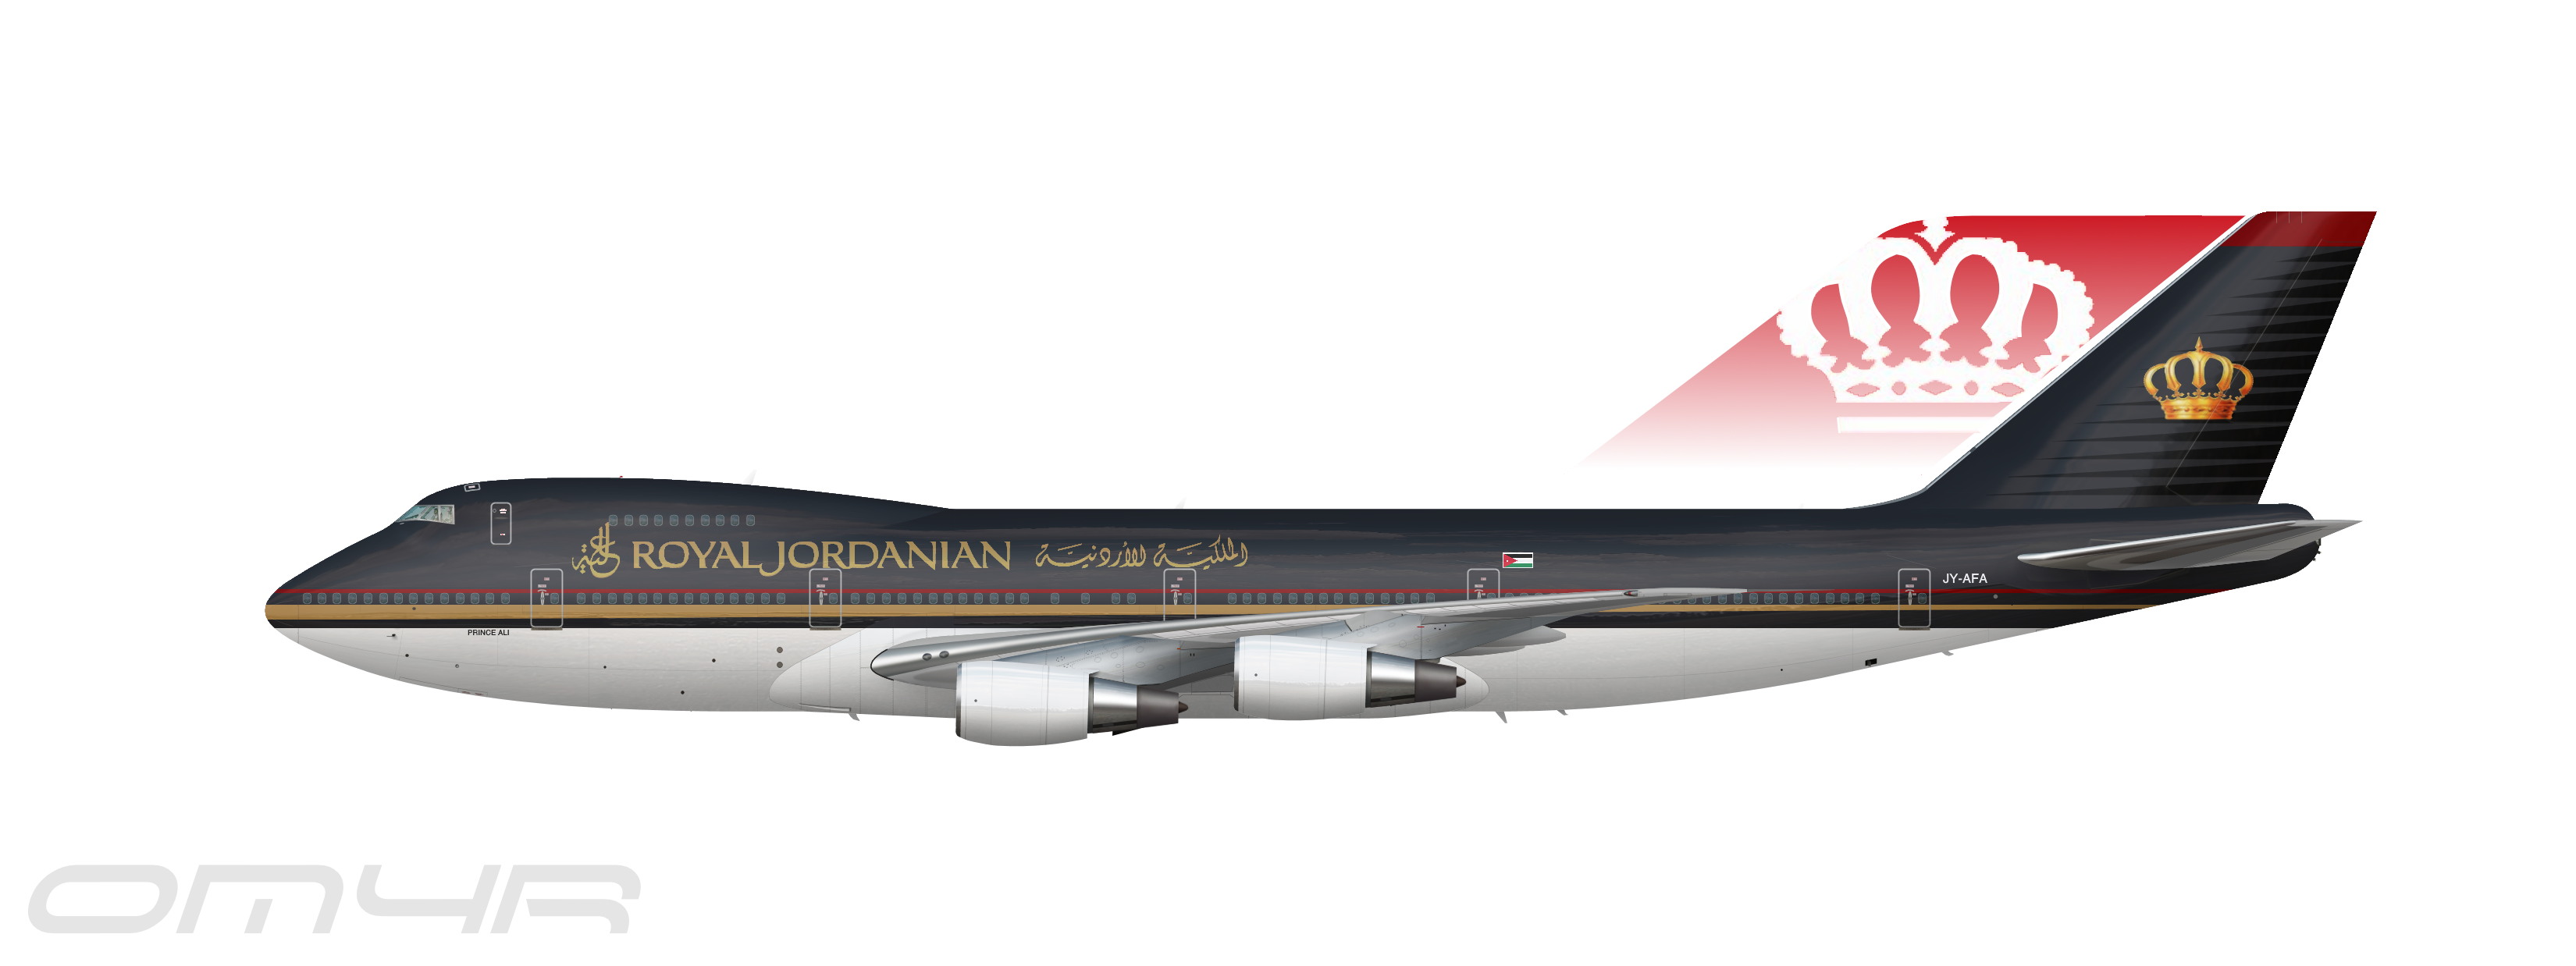 Royal Jordanian 747-2D3B - The Royal Jordanian Collection 